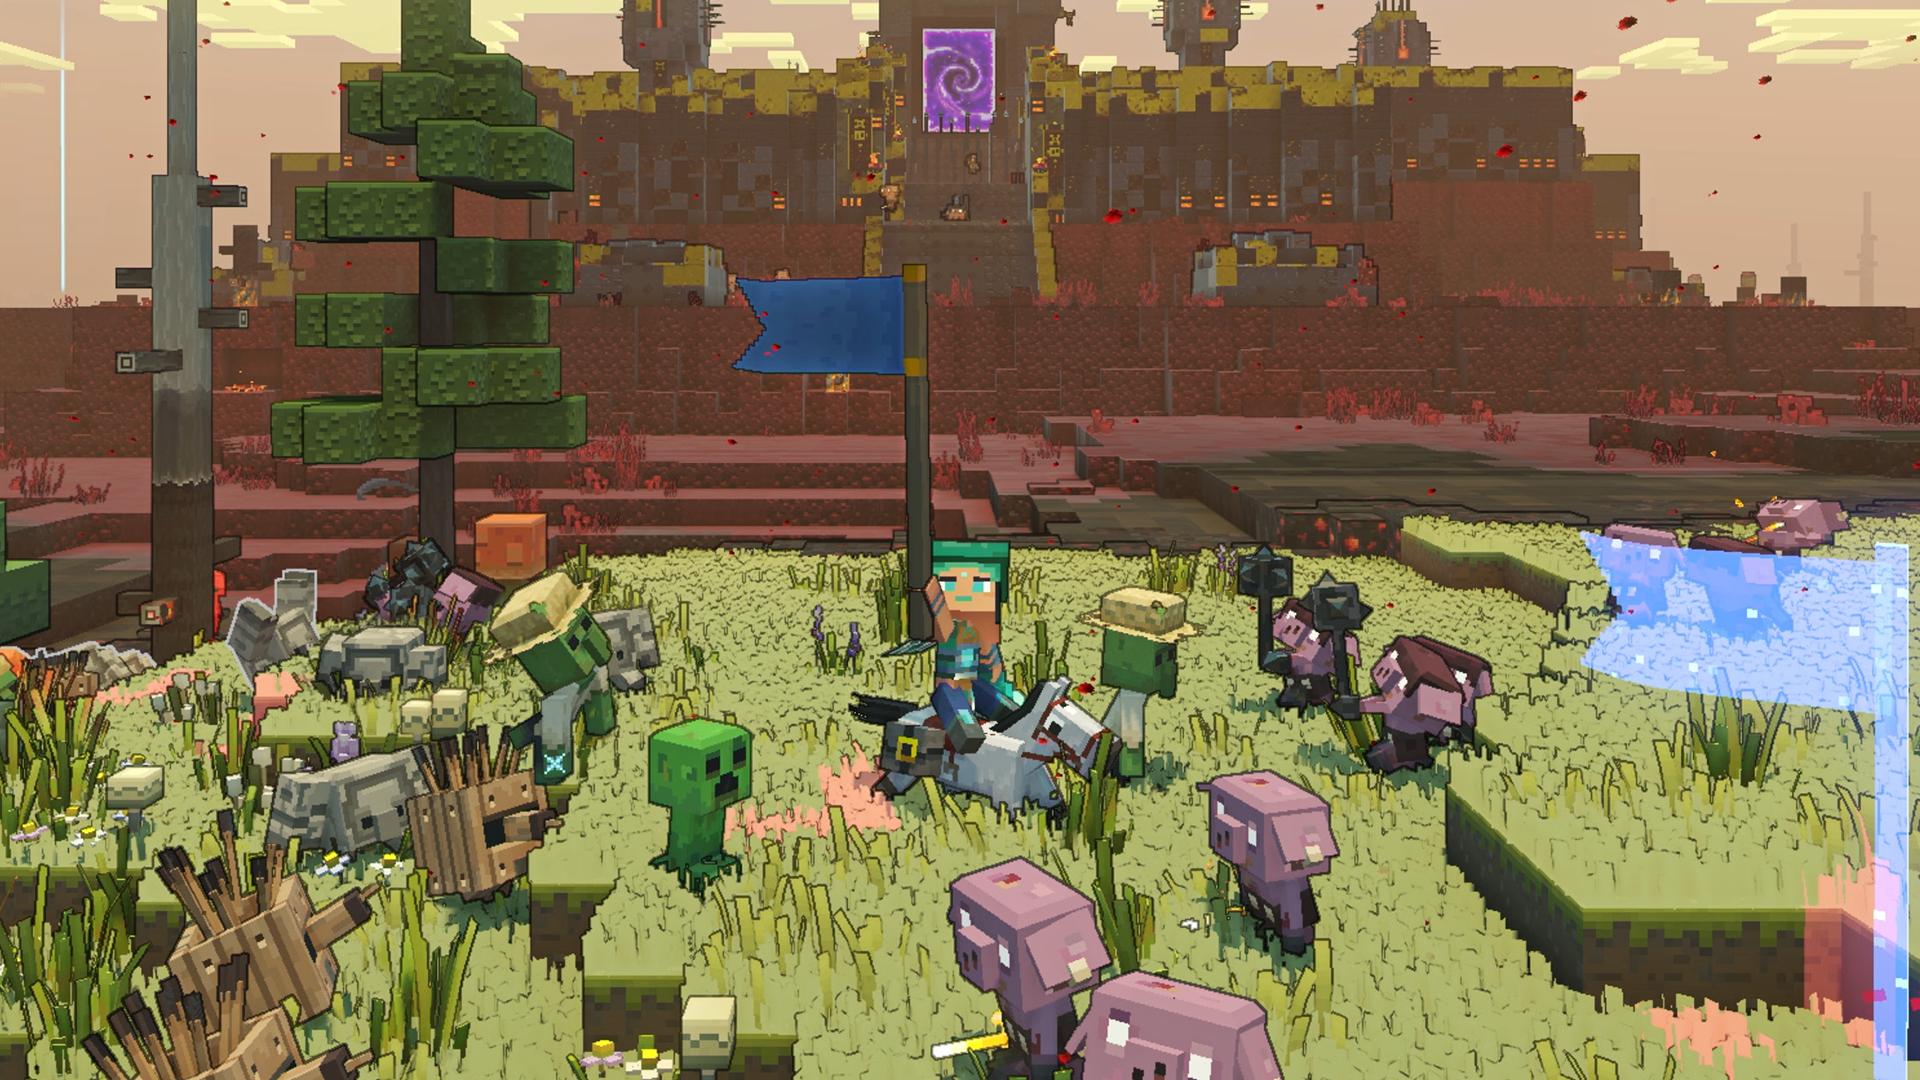 Haven lands in Minecraft - News